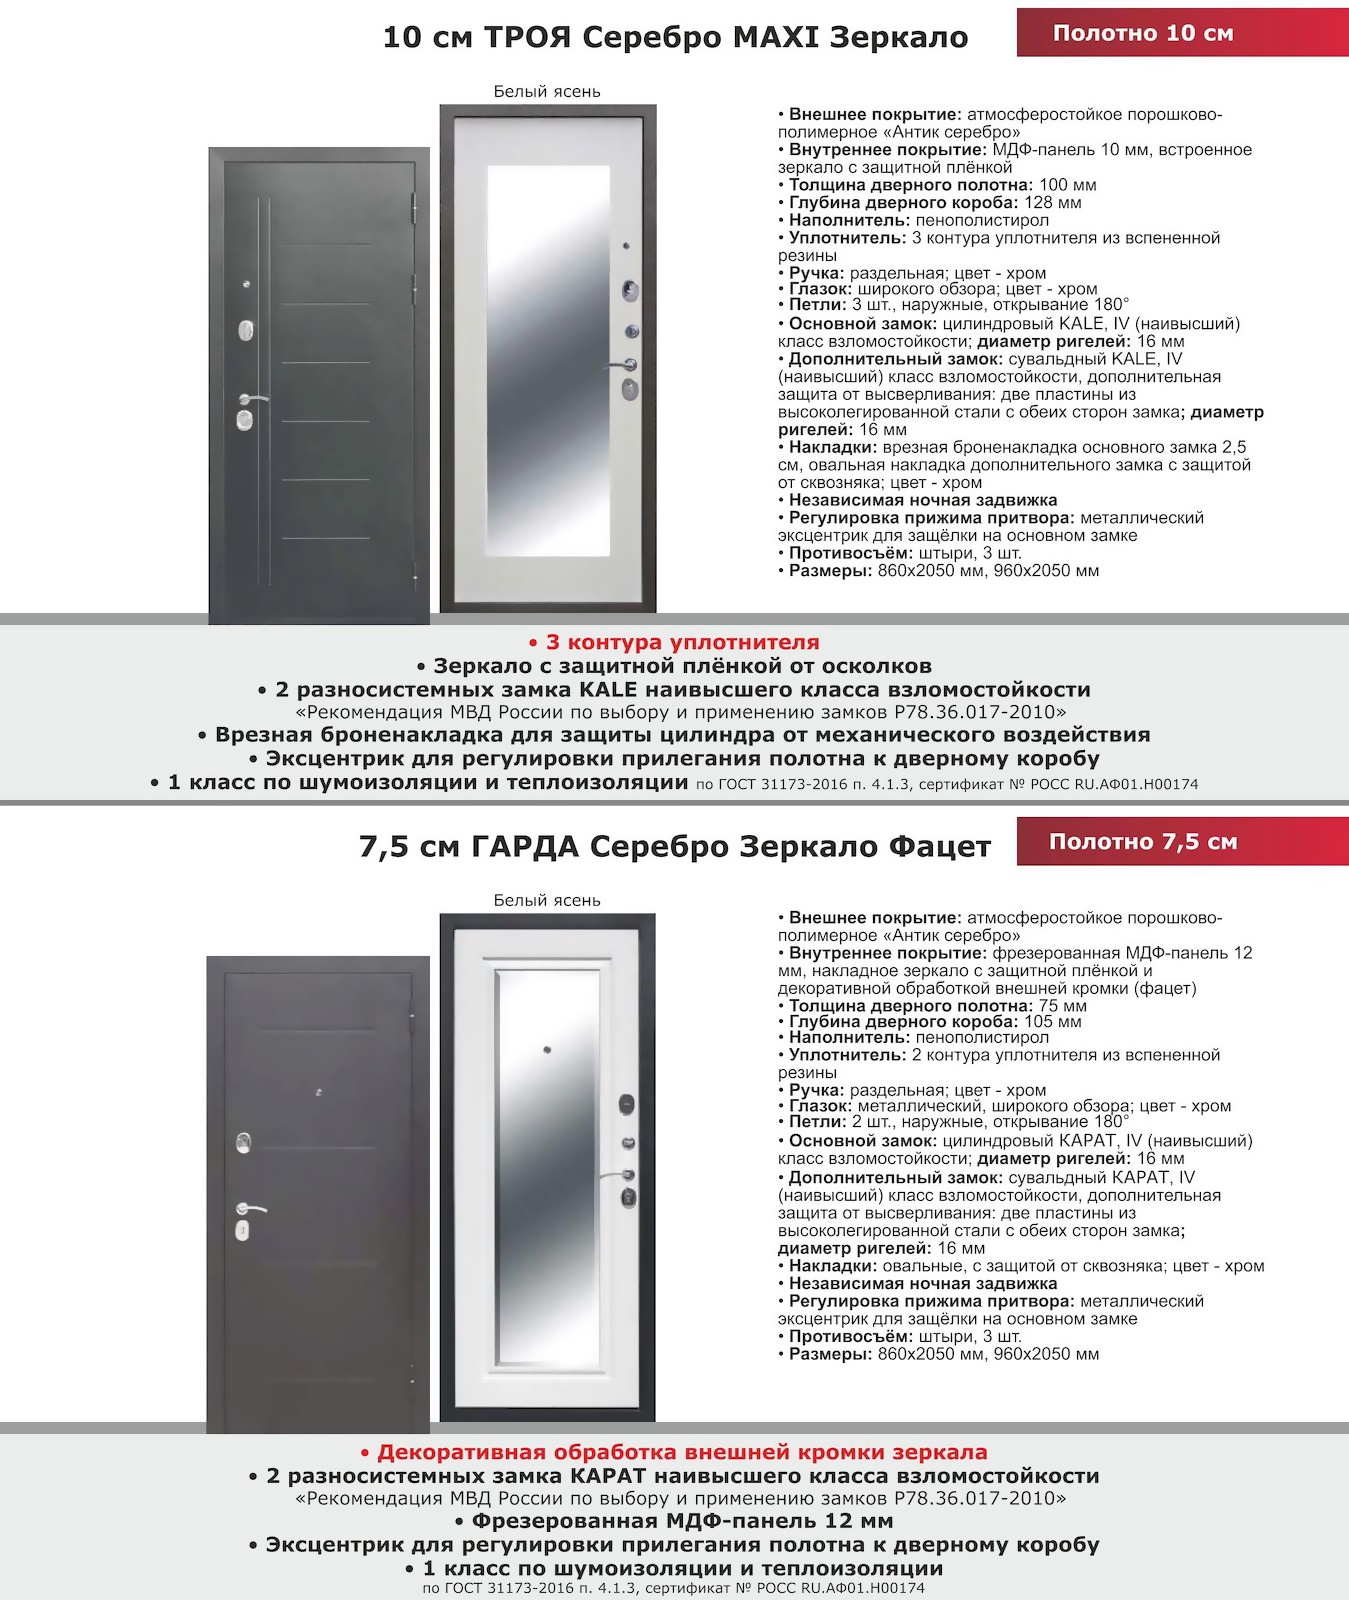 двери с зеркалом - каталог феррони серебро maxi